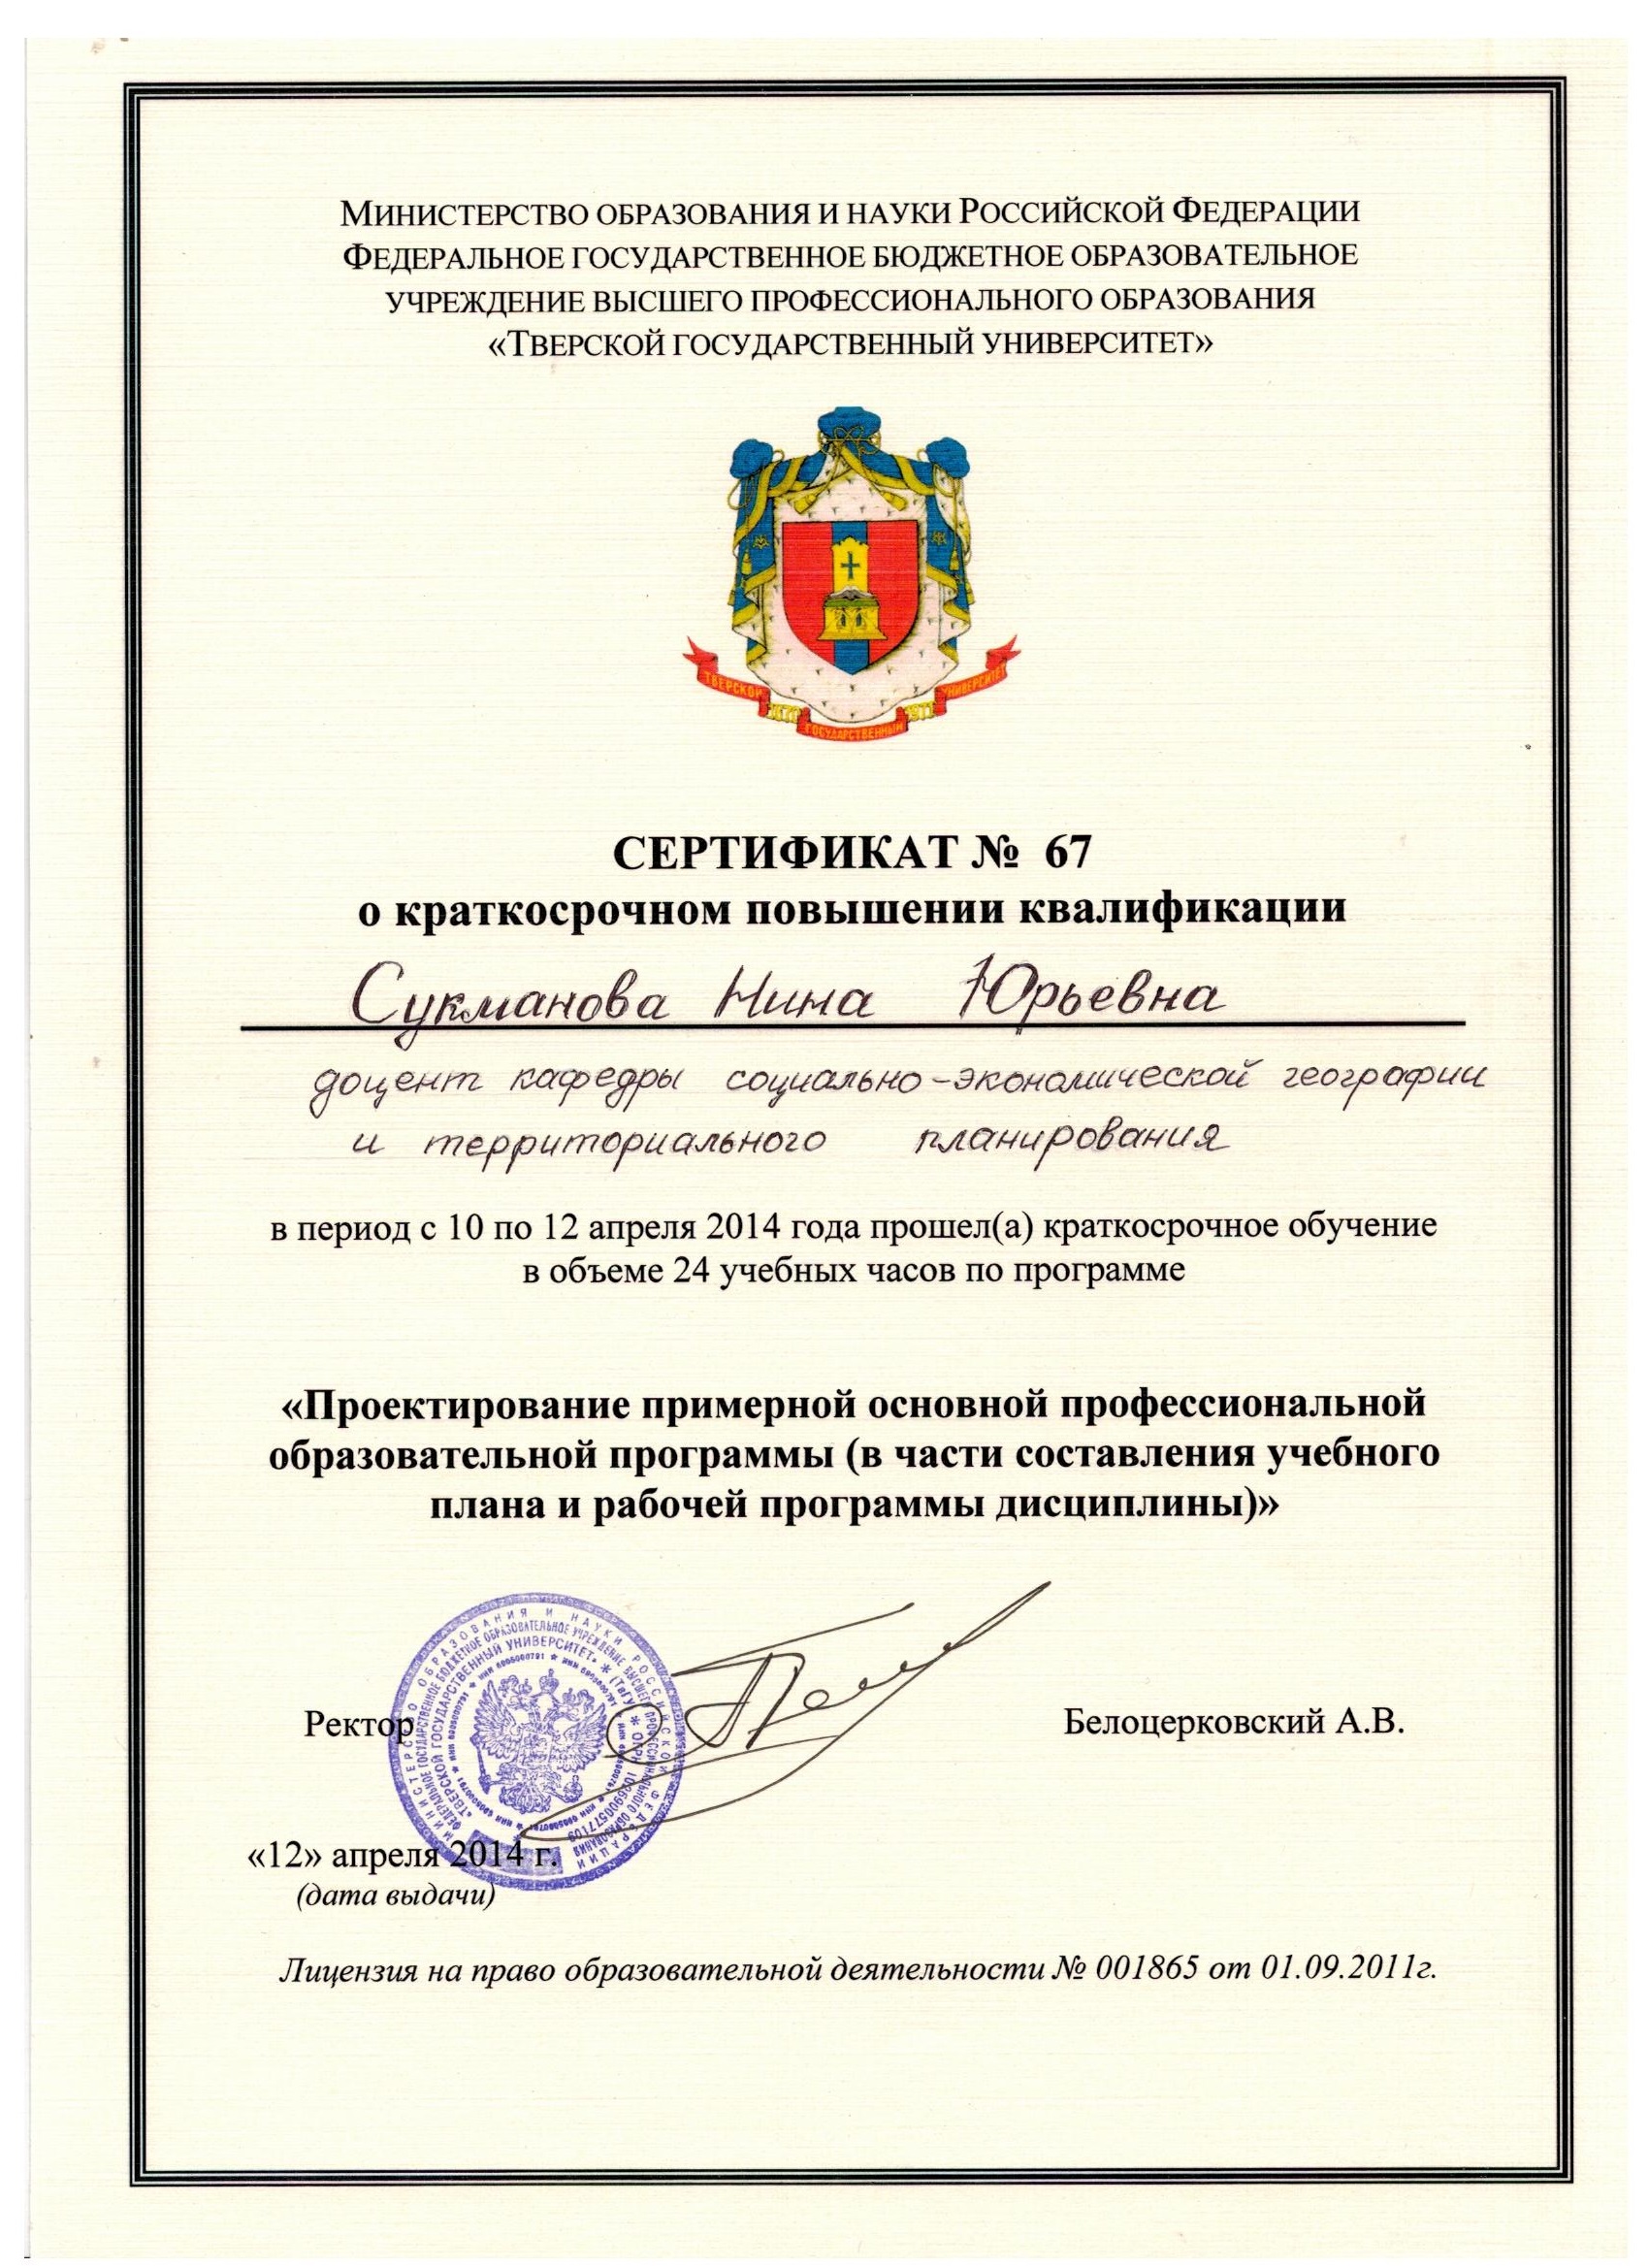 сертификат о краткосрочном повышении квалификации 2014 001.jpg